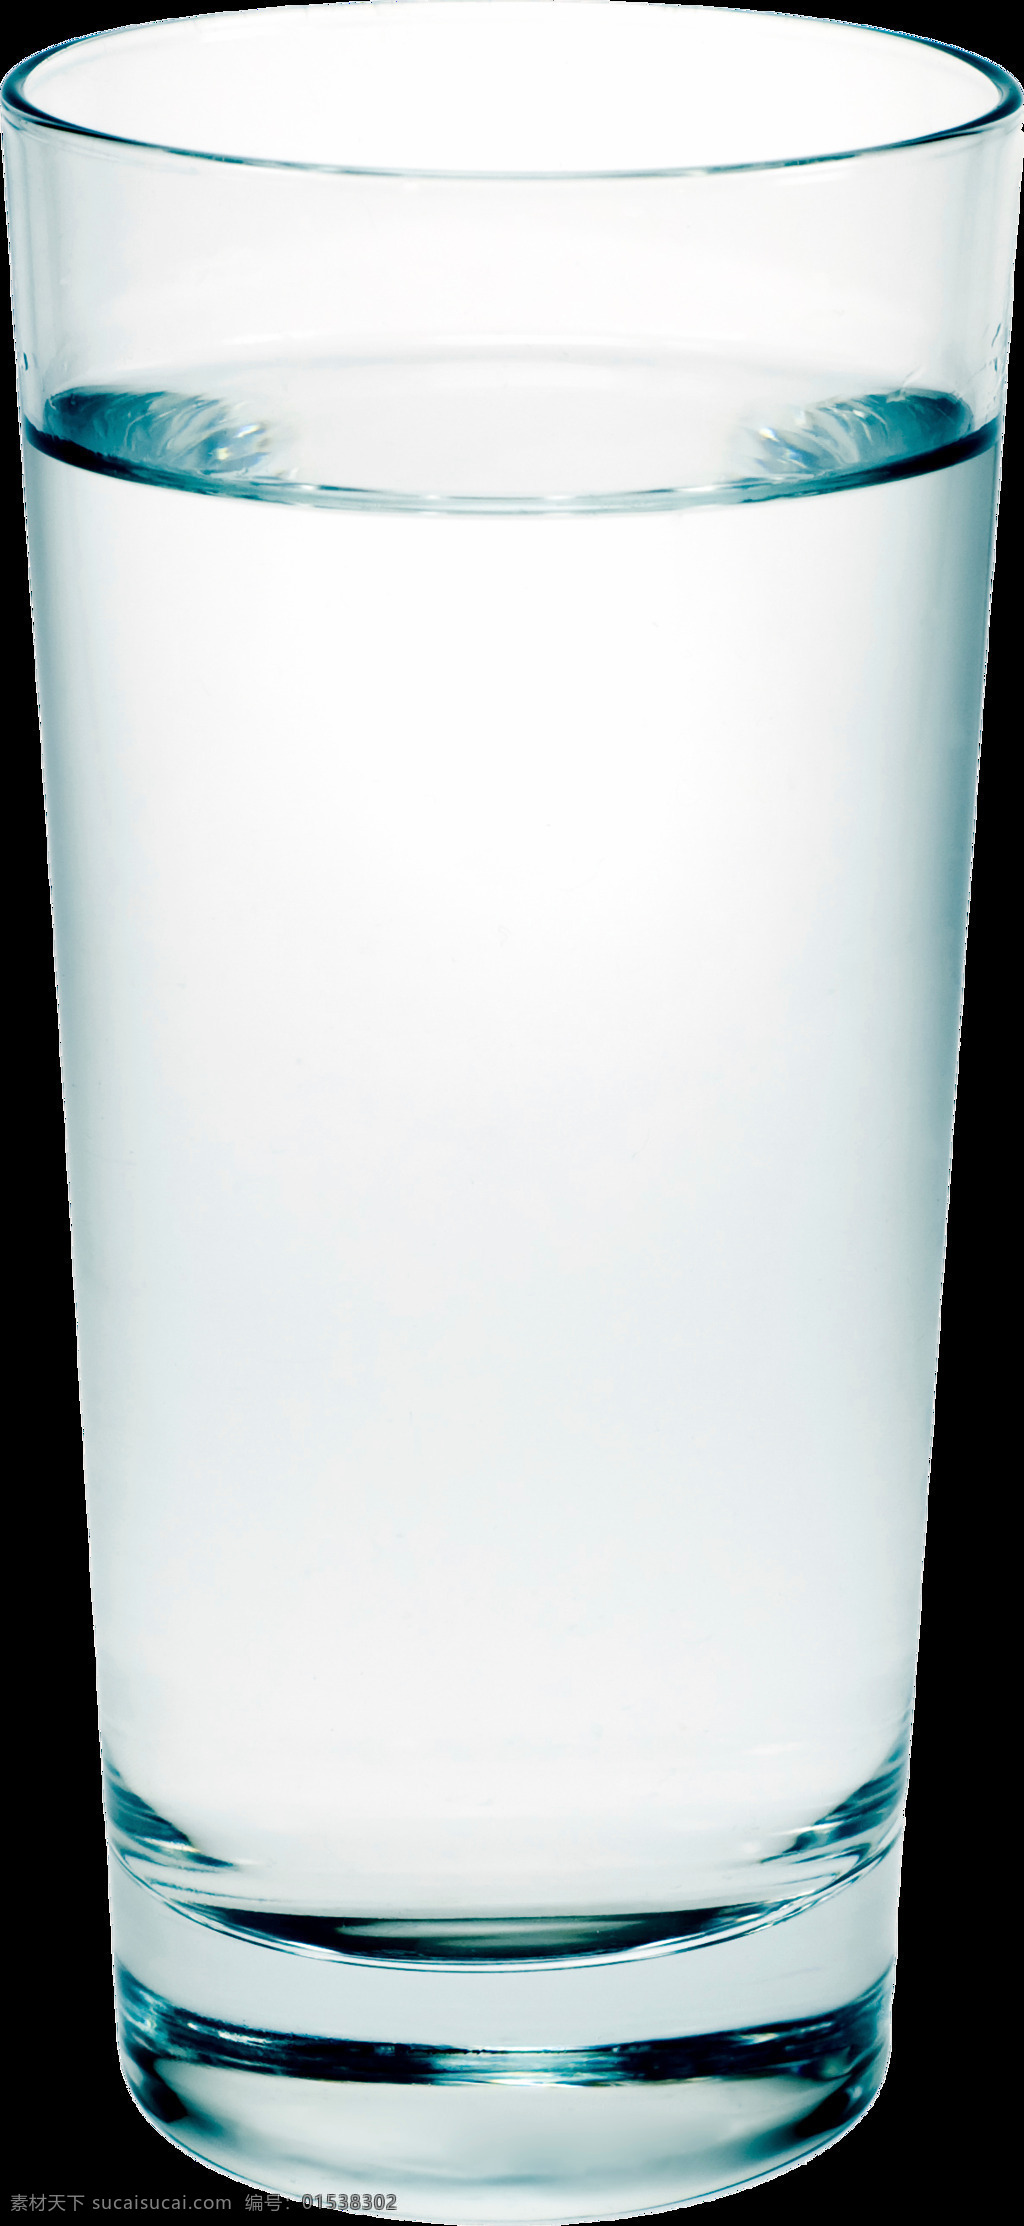 单层玻璃杯 水晶杯 玻璃杯素材 透明牛奶杯 玻璃酒杯 玻璃水杯 时尚水杯 玻璃容器 玻璃制品 透明玻璃杯 智能对象 贴图 提案 柯林杯 威士忌杯 海波杯 白酒杯 鸡尾酒杯 高脚杯 啤酒杯 生活用品 生活百科